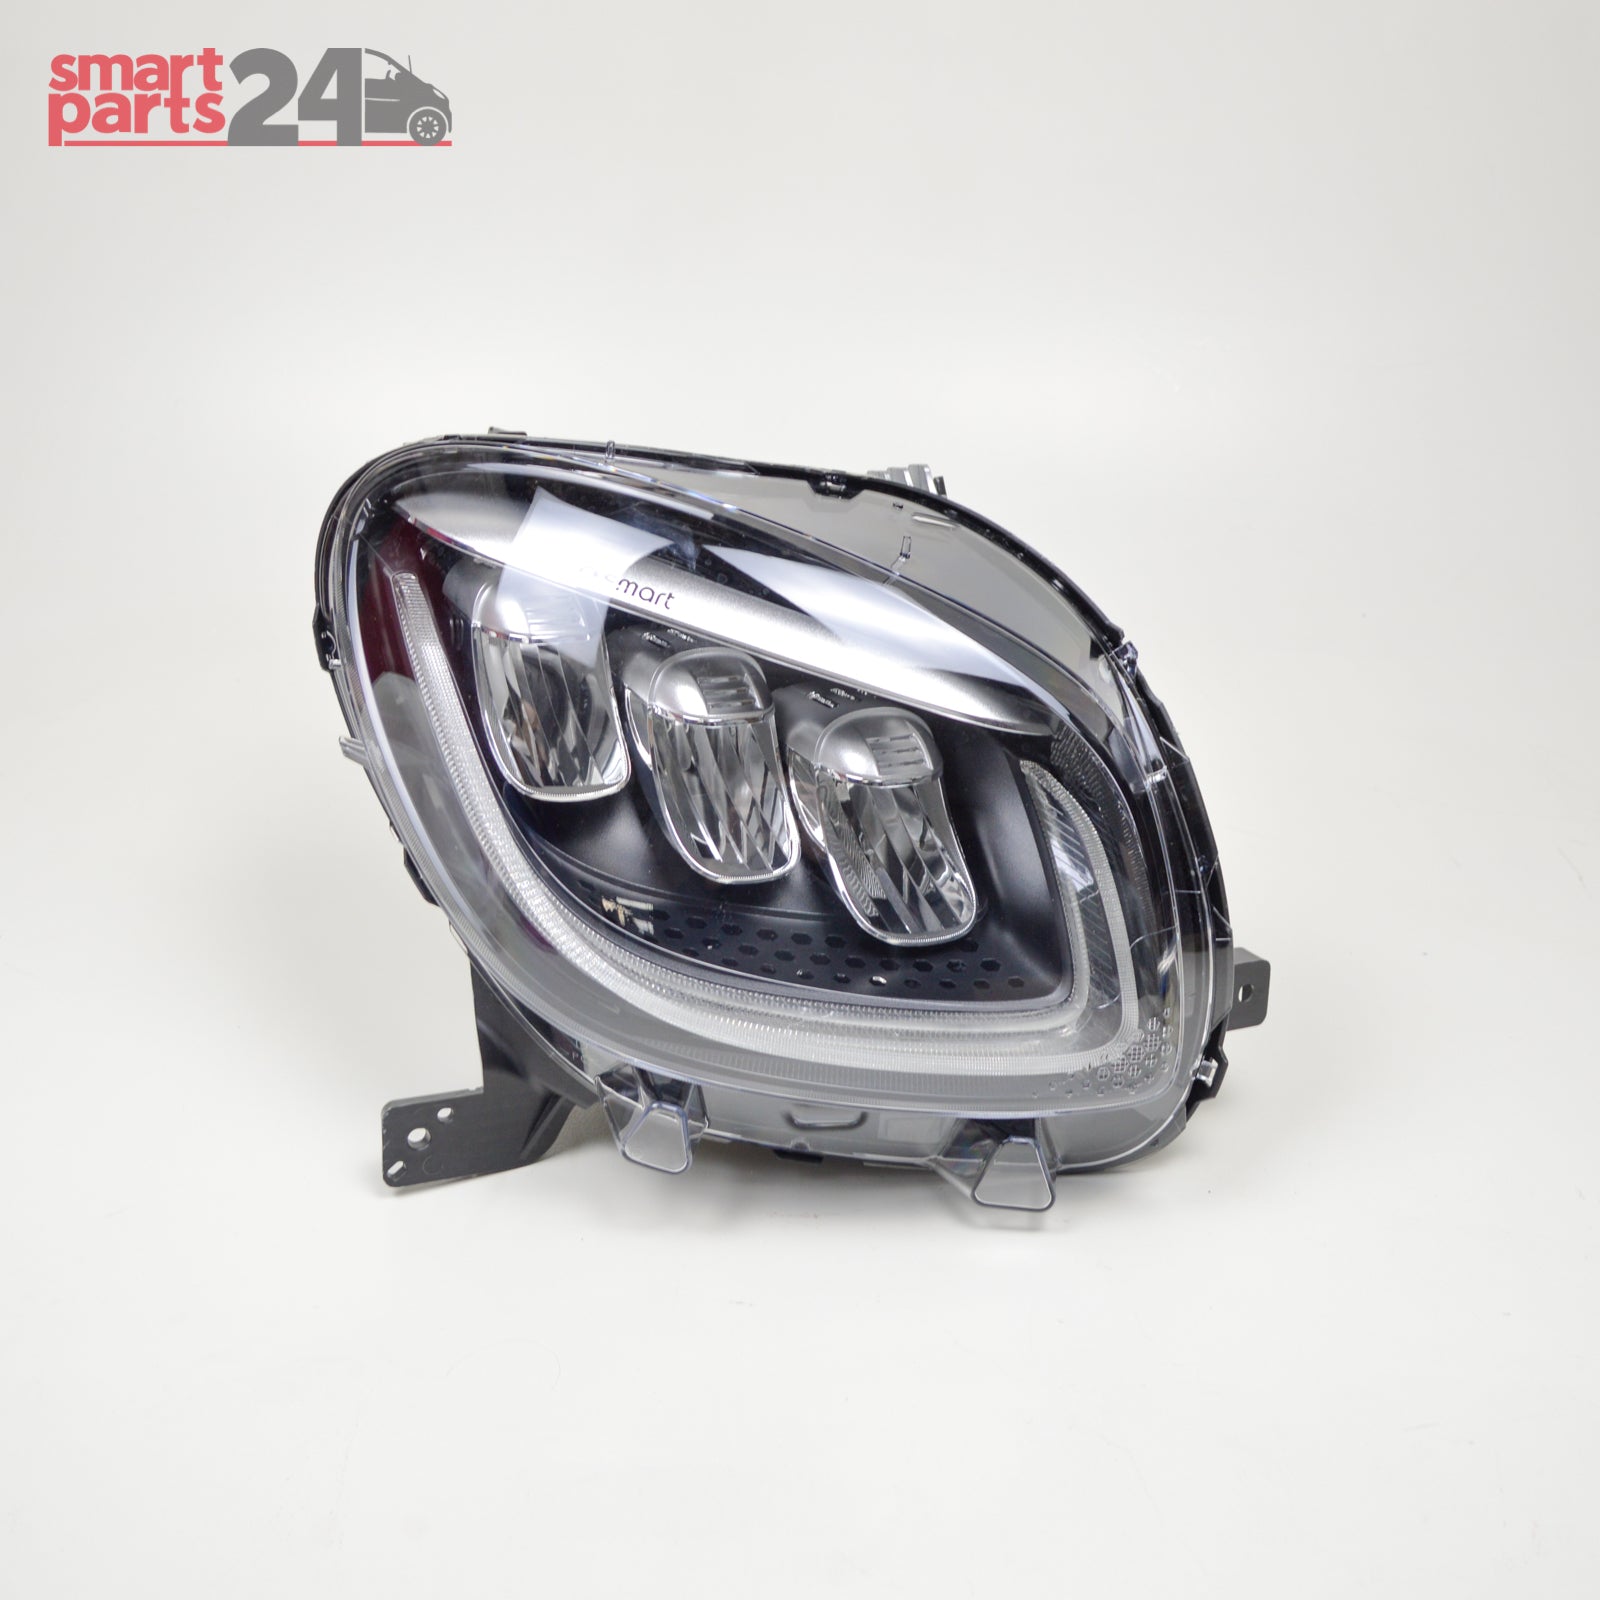 Smart Fortwo 453 Facelift Headlight, main headlight, right Headlight, full LED